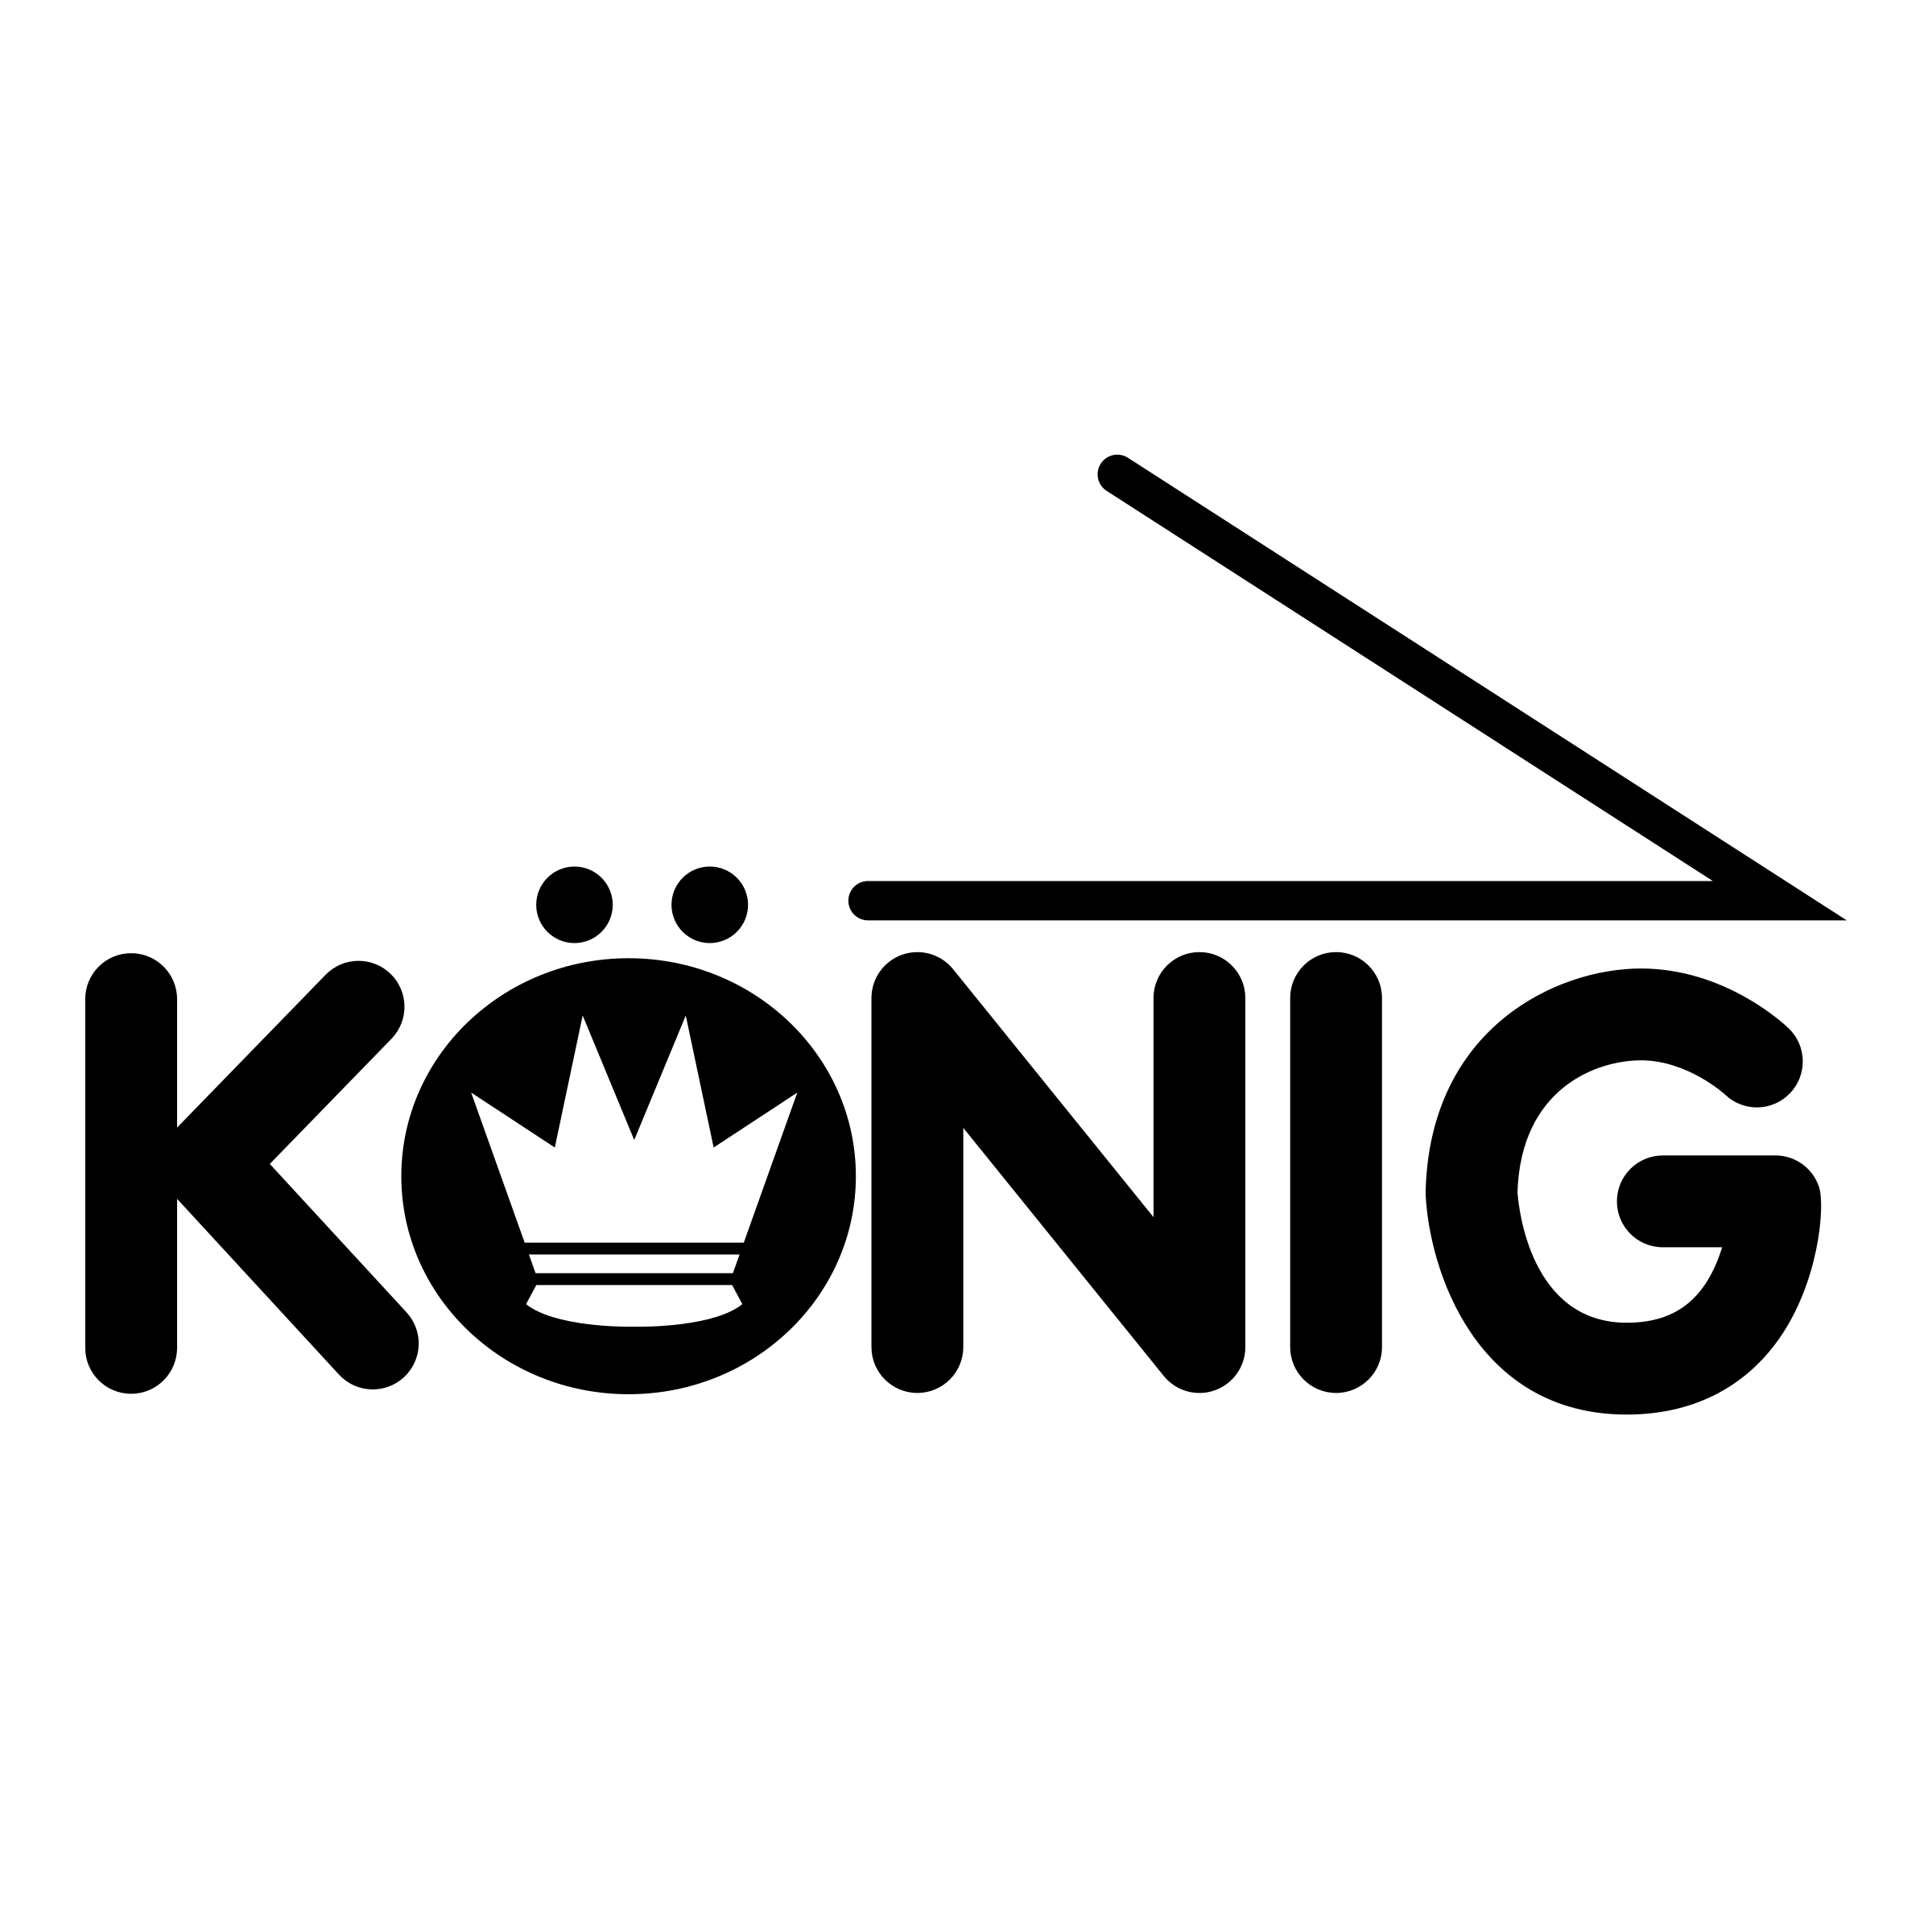 Konig Logo - Konig Logo PNG Transparent & SVG Vector